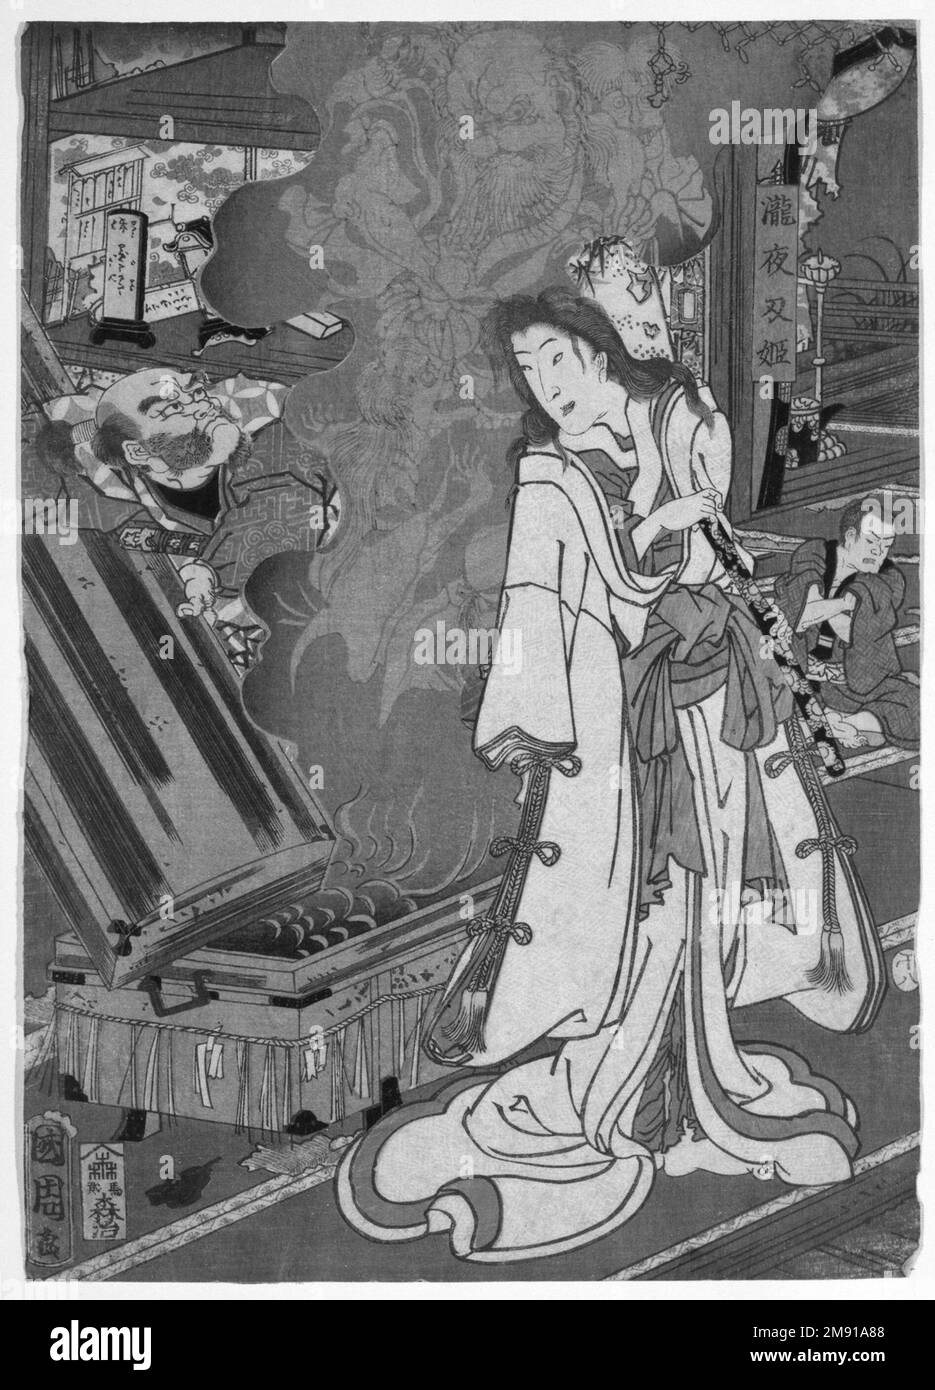 Yoshikado Besuch des alten Tempels in Soma Toyohara Kunichika (Japanisch, 1835-1900). Yoshikado Besuch des alten Tempels in Soma, 1858, 8. Monat. Holzblockdruck (in Farbe), jedes Blatt: 13 11/16 x 9 11/16 cm (34,8 x 24,6 cm). Dieser Triptych fängt eine beliebte Klimabedingungen von der Kabuki-Bühne ein. Der Krieger Taro Yoshikado taucht vor einem Froschweiser vor einem Tempel auf und bittet um übernatürliche Kräfte, um den Mord an einem Kriegsherren zu rächen. Prinzessin Takiyasha, die Tochter des verstorbenen Kriegsherrn, lebt im Tempel und verfeinert ihre Kräfte für denselben Zweck. Sie erscheint im Zentrum und lässt eine gho frei Stockfoto